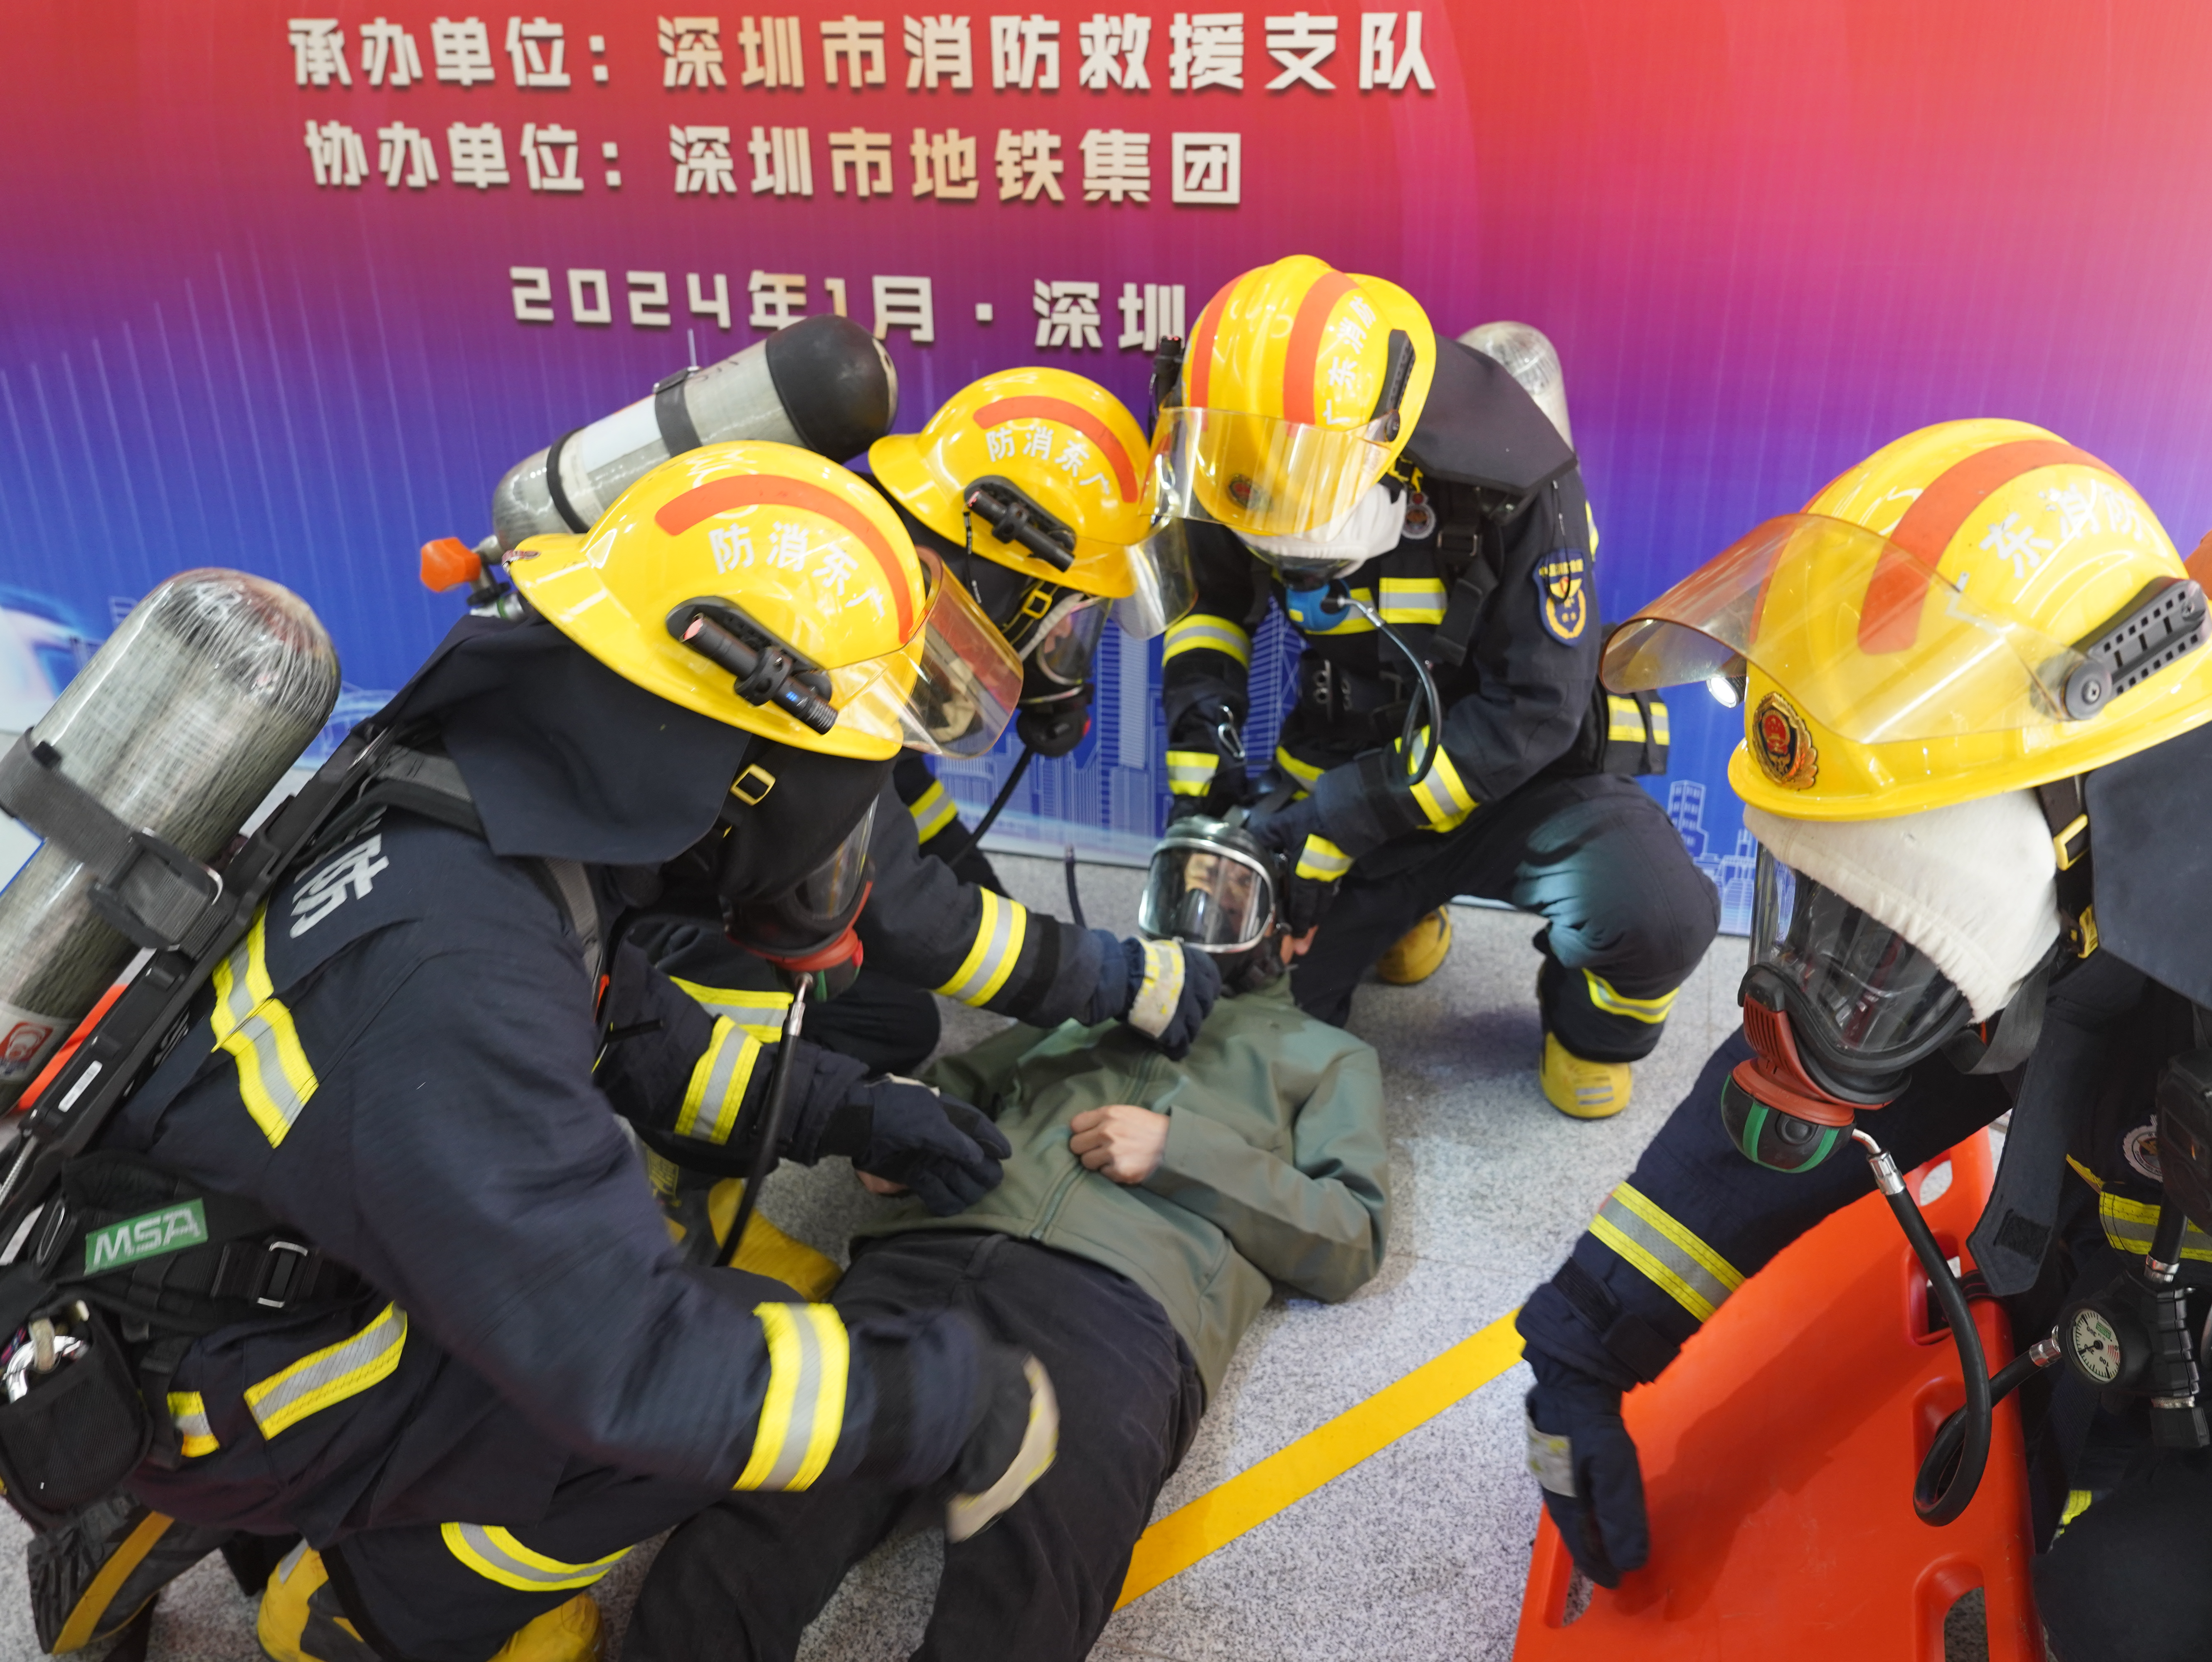 广东省地下轨道交通灭火救援实战演练在深圳地铁举行